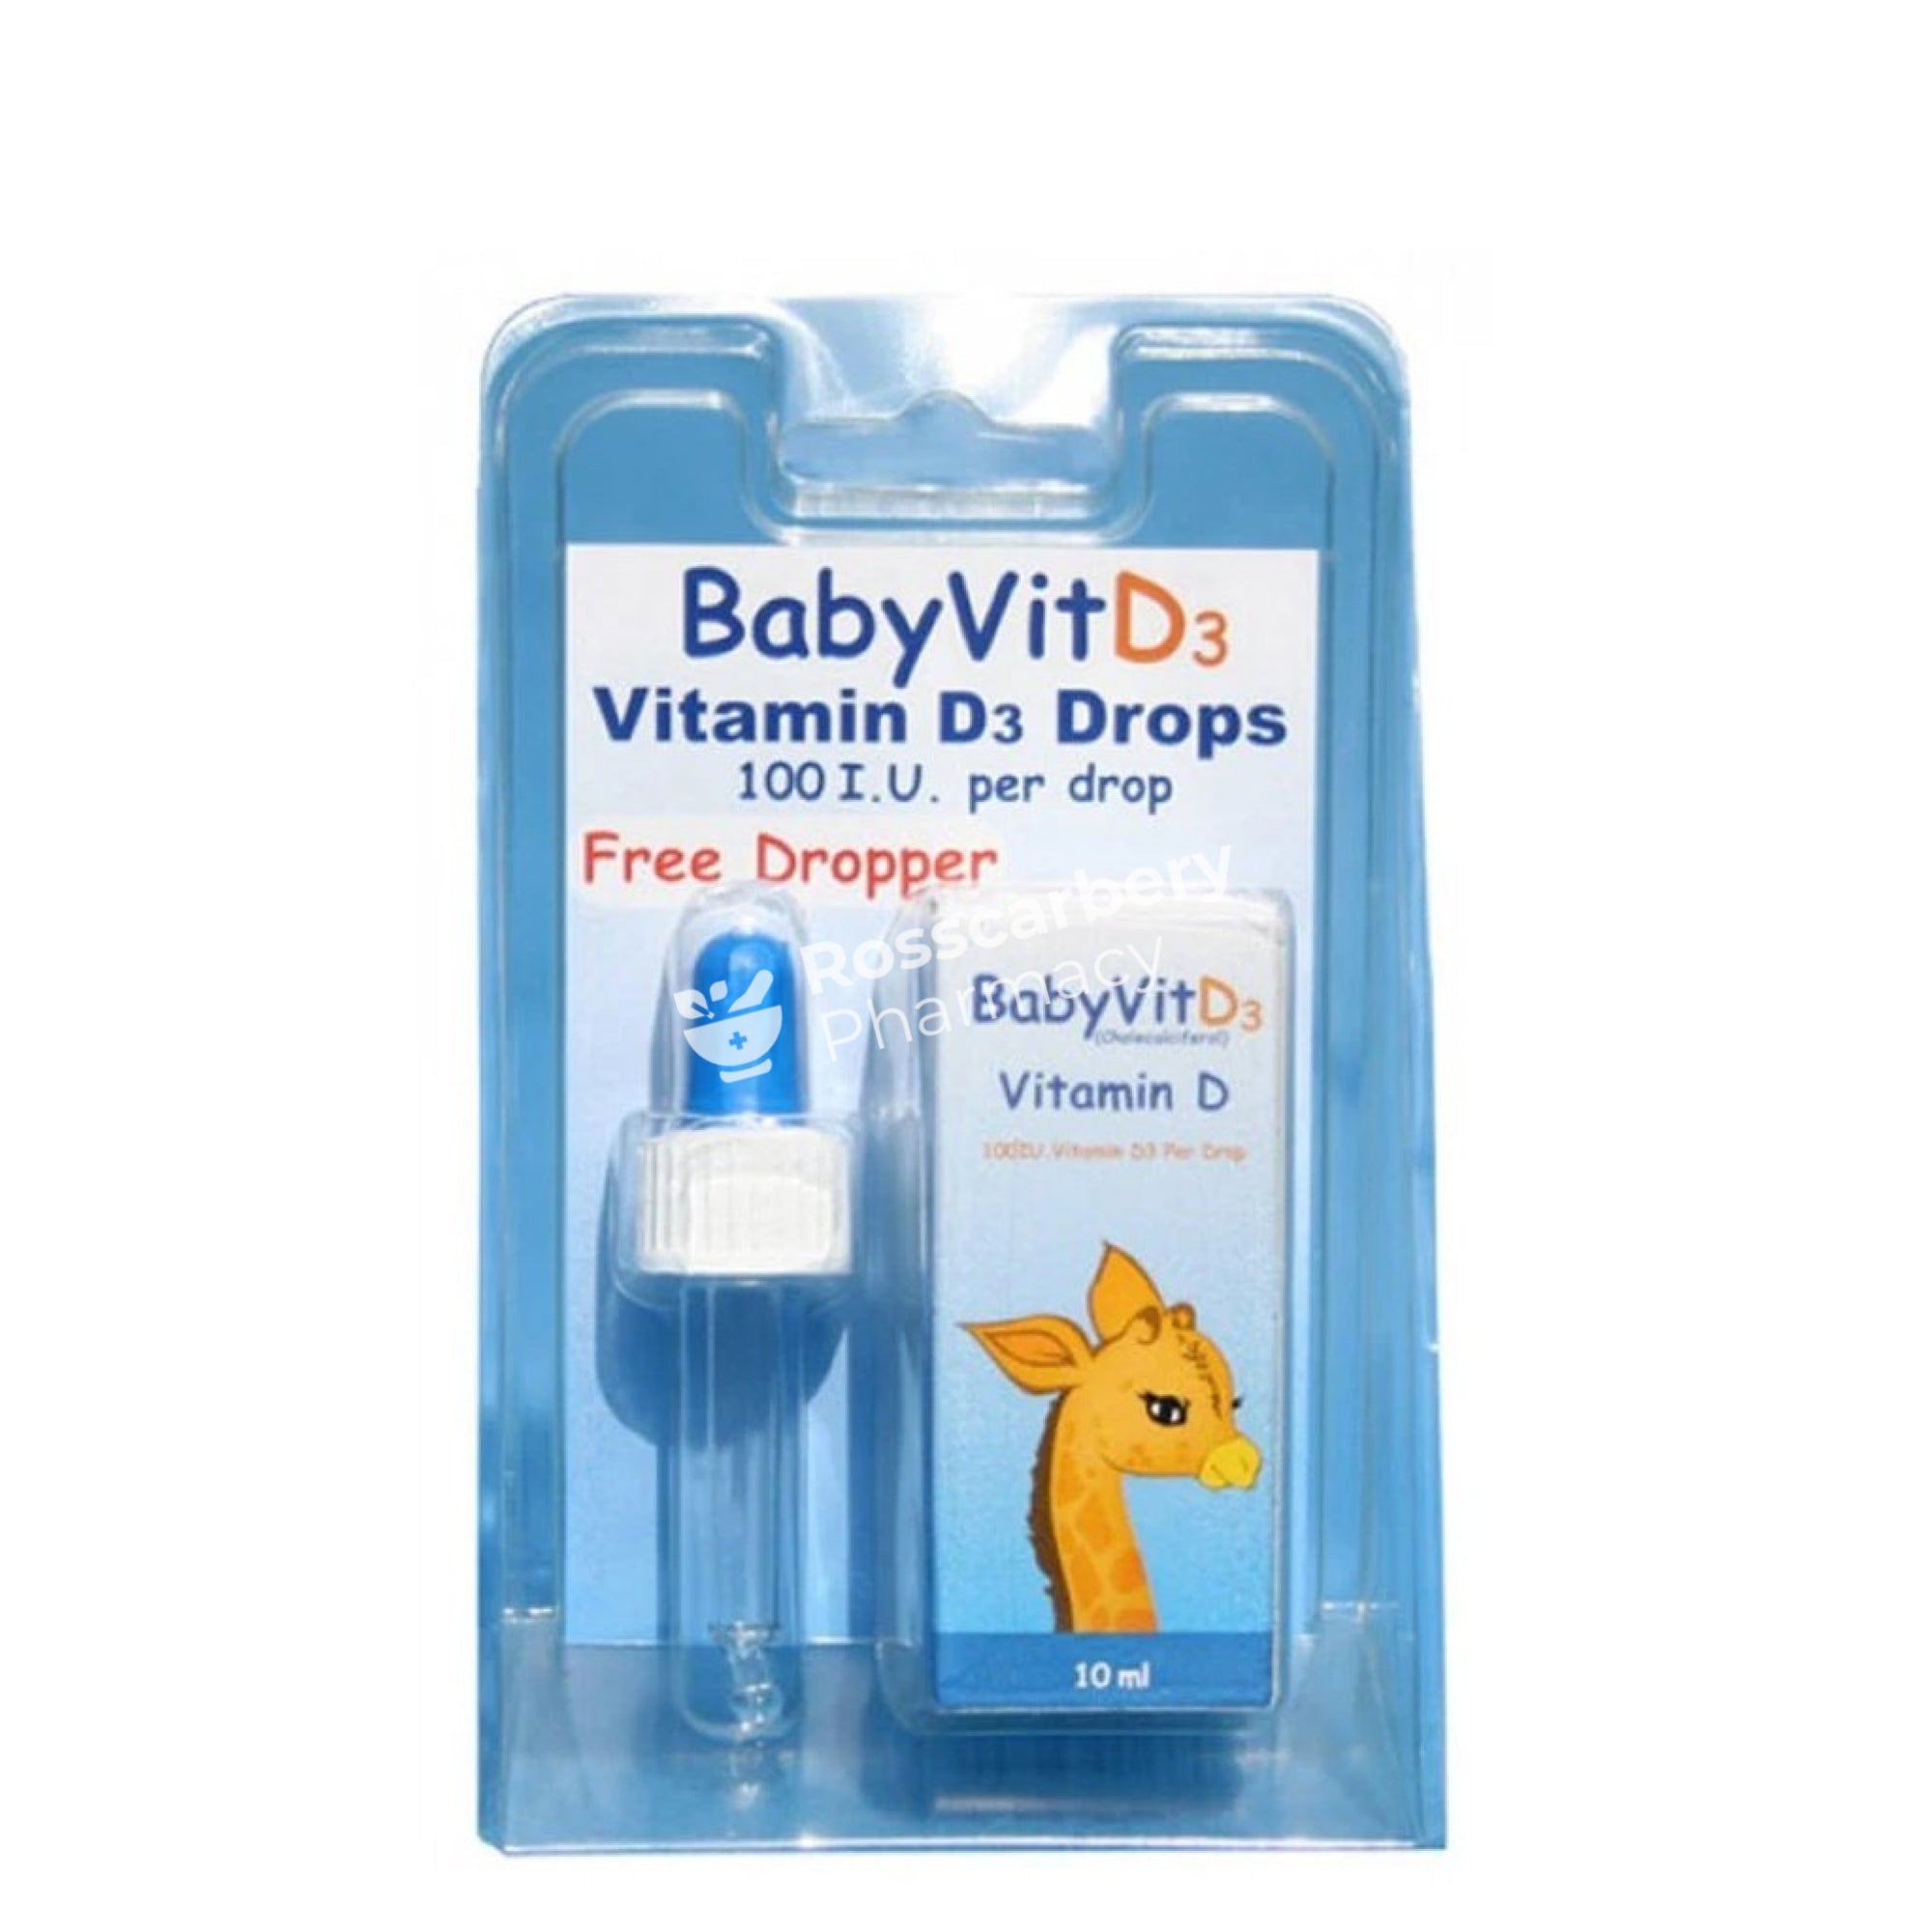 Babyvitd3 Vitamin D3 Drops Childrens Immune Support